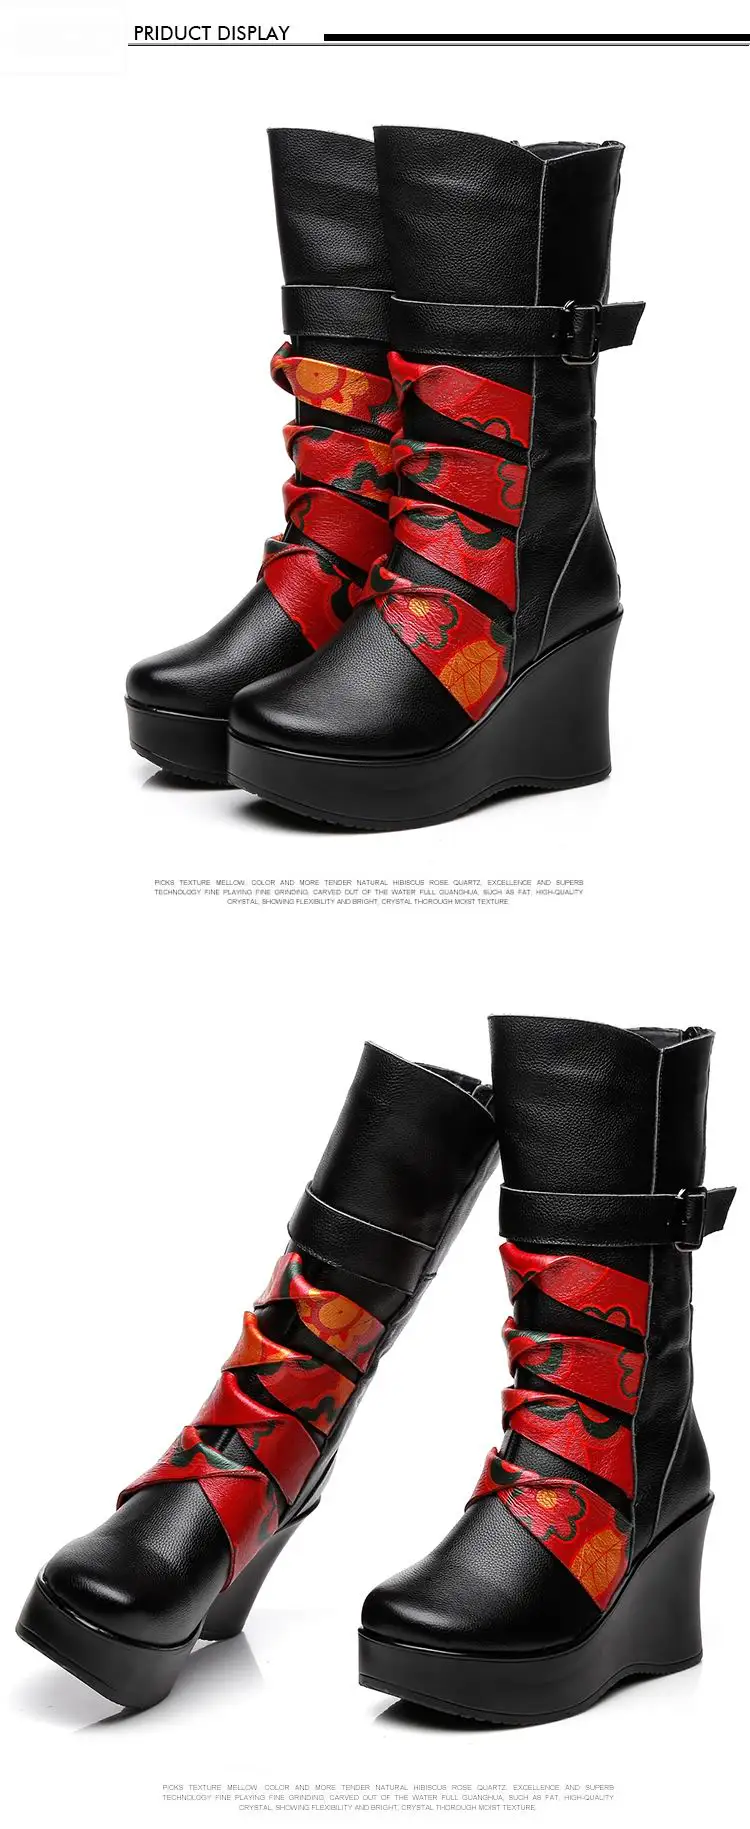 GKTINOO/Новые модные женские сапоги из натуральной кожи; зимняя теплая обувь до середины икры; повседневная женская обувь на танкетке; женские мотоботы